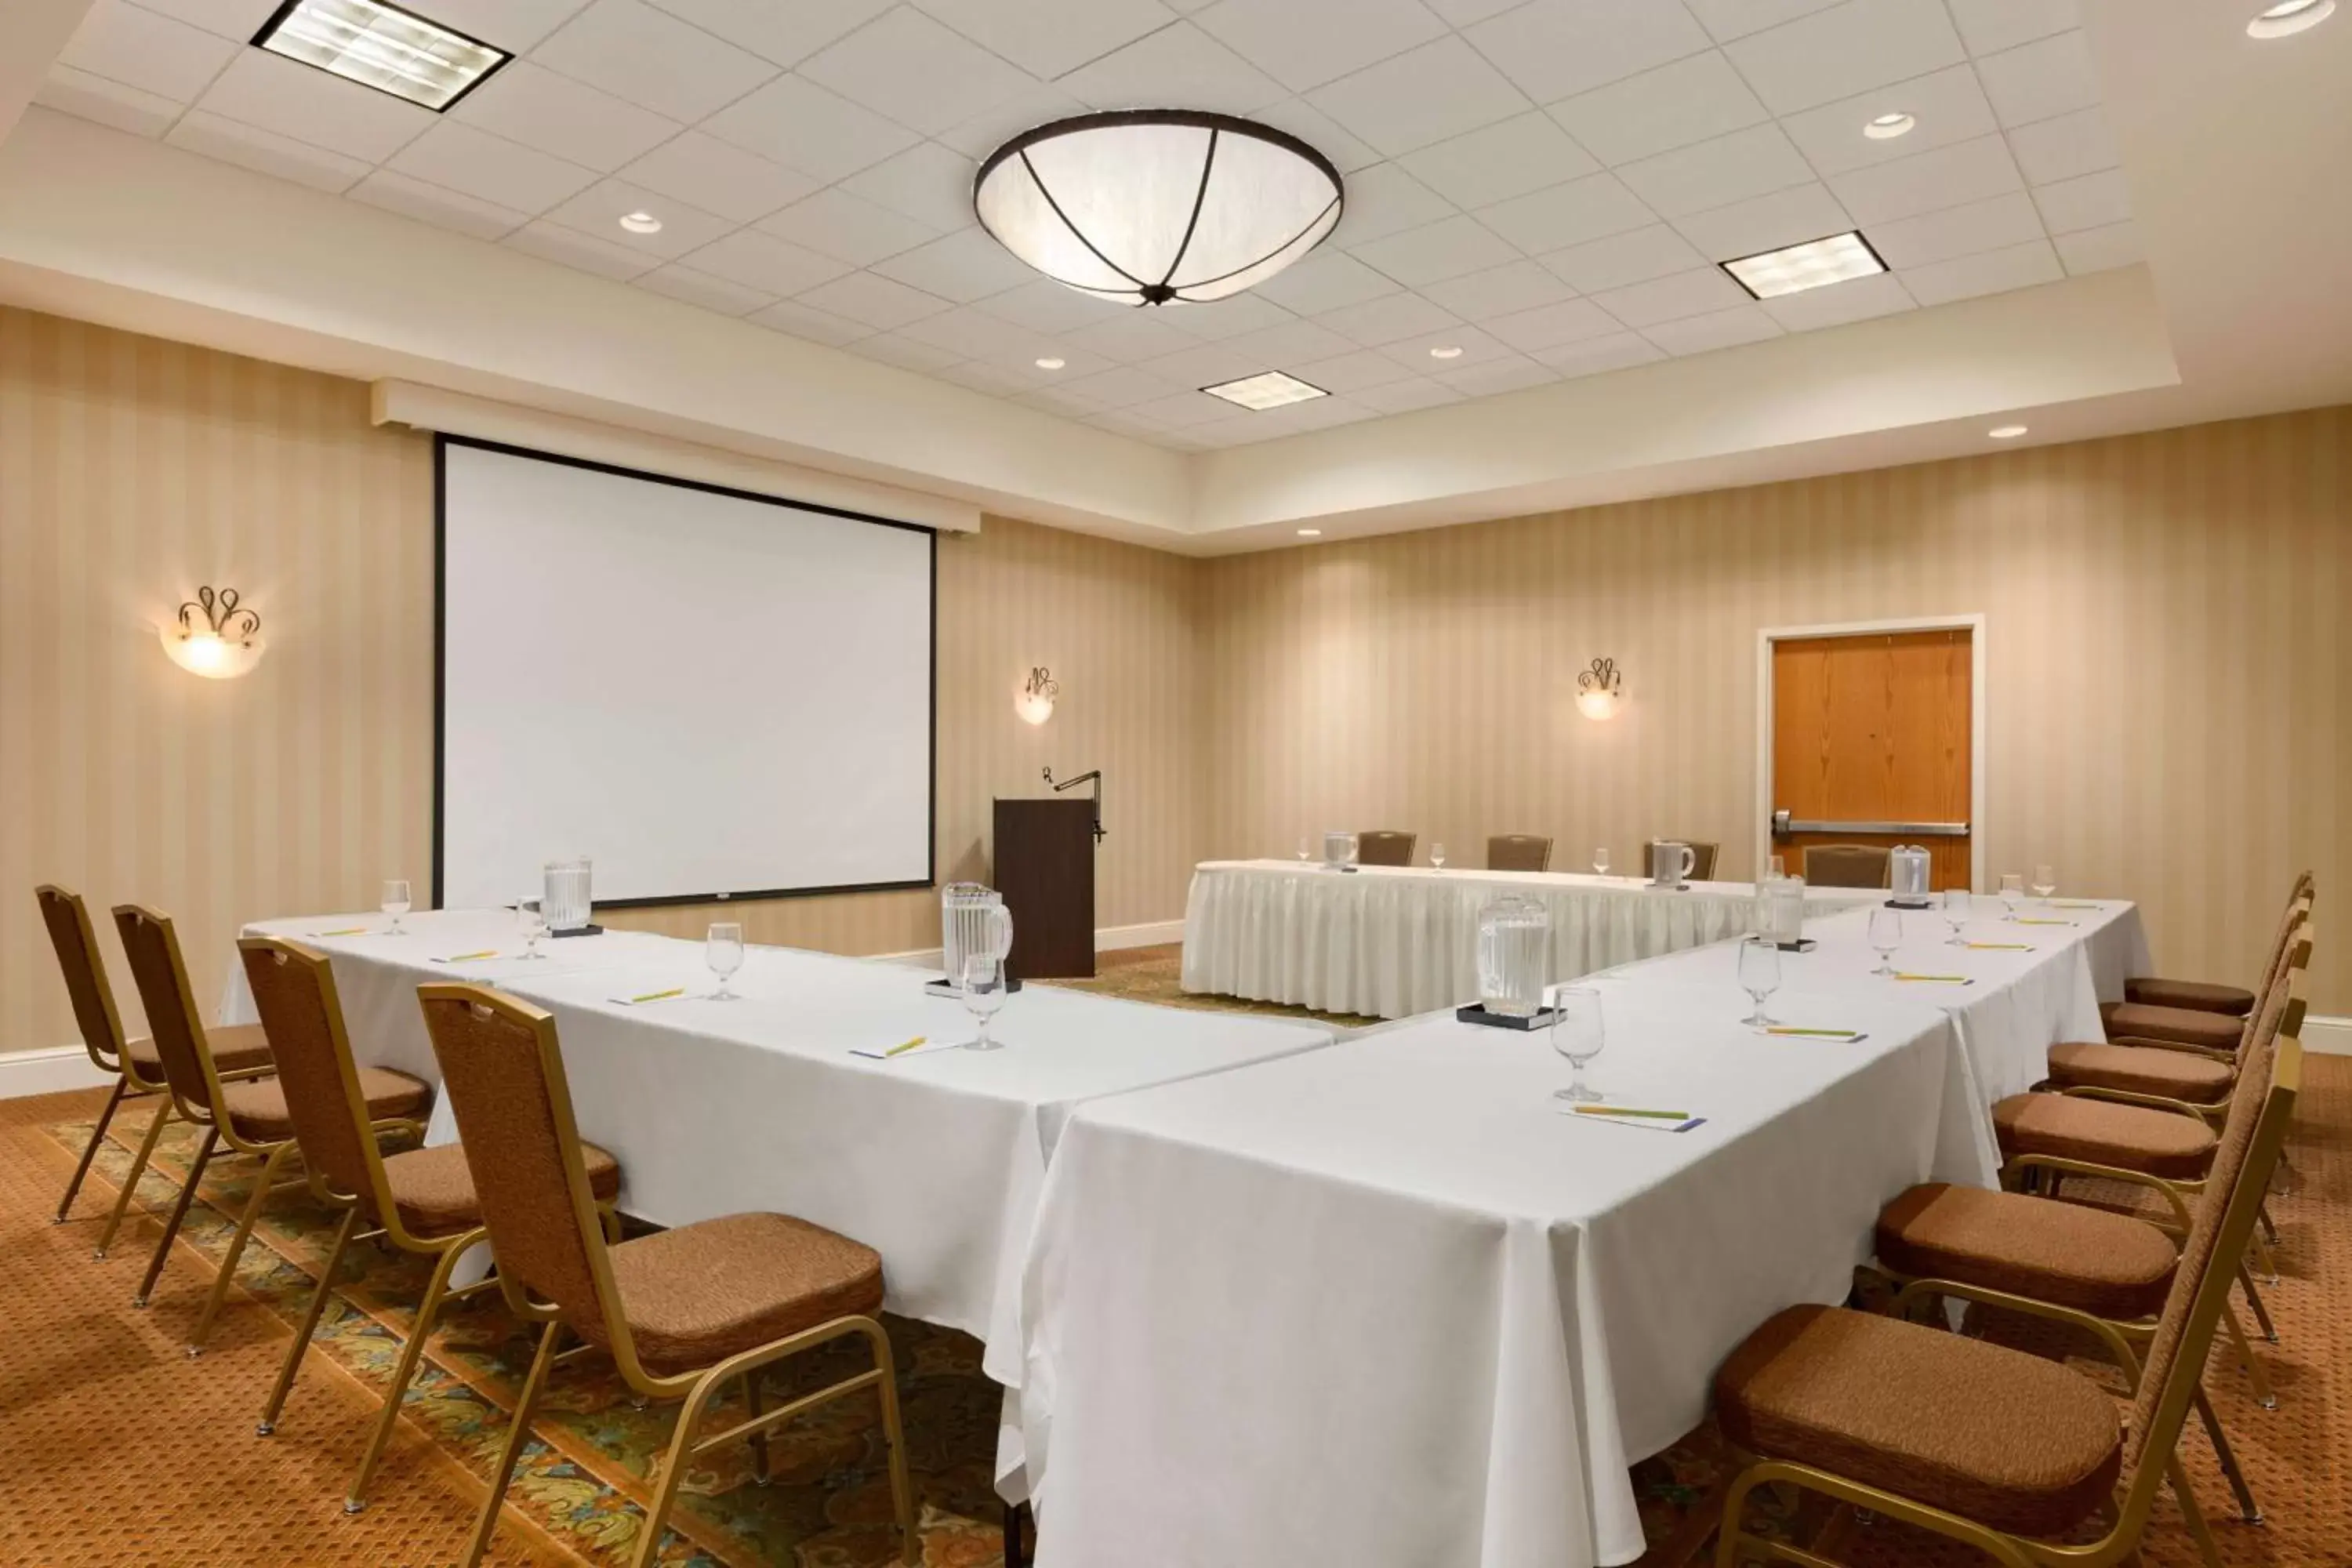 Meeting/conference room in Hilton Garden Inn Solomons